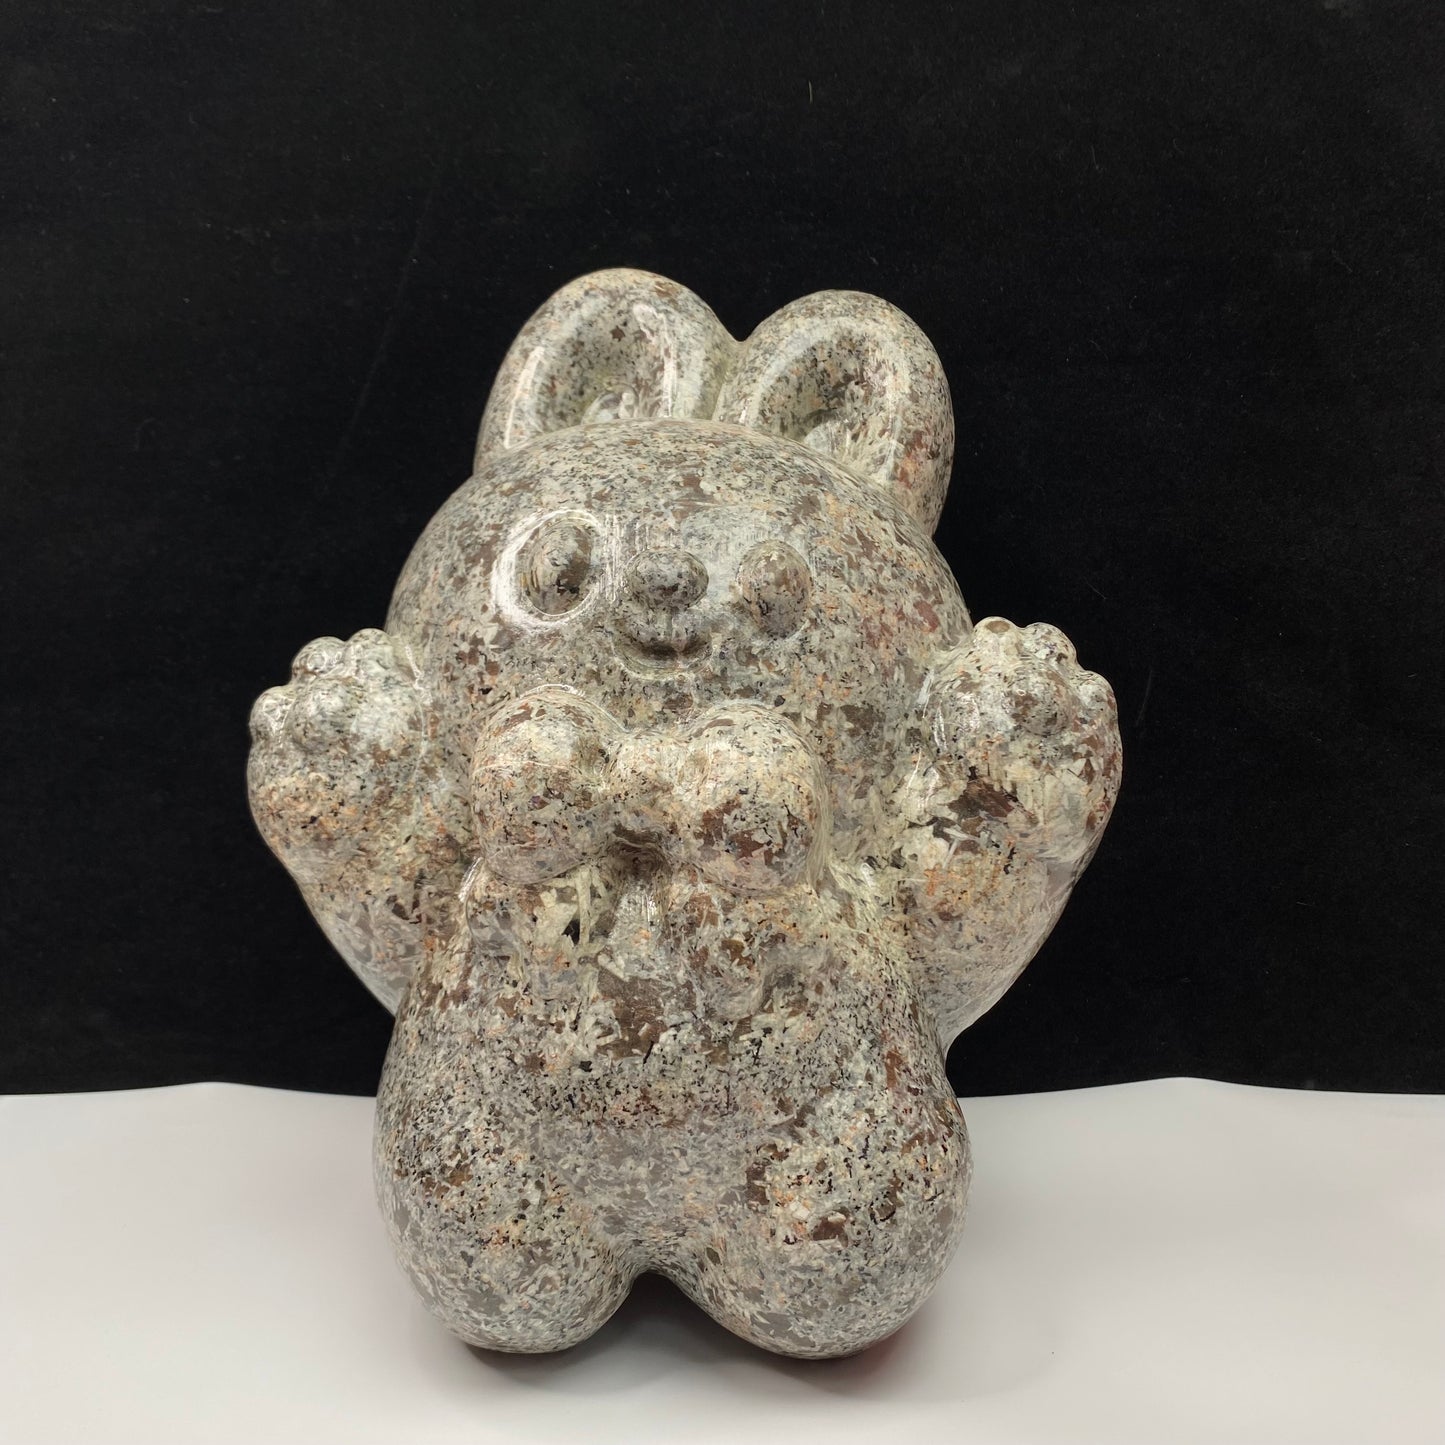 511-Large Carving Yooperlite open hands cartoon cute bunny rabbit